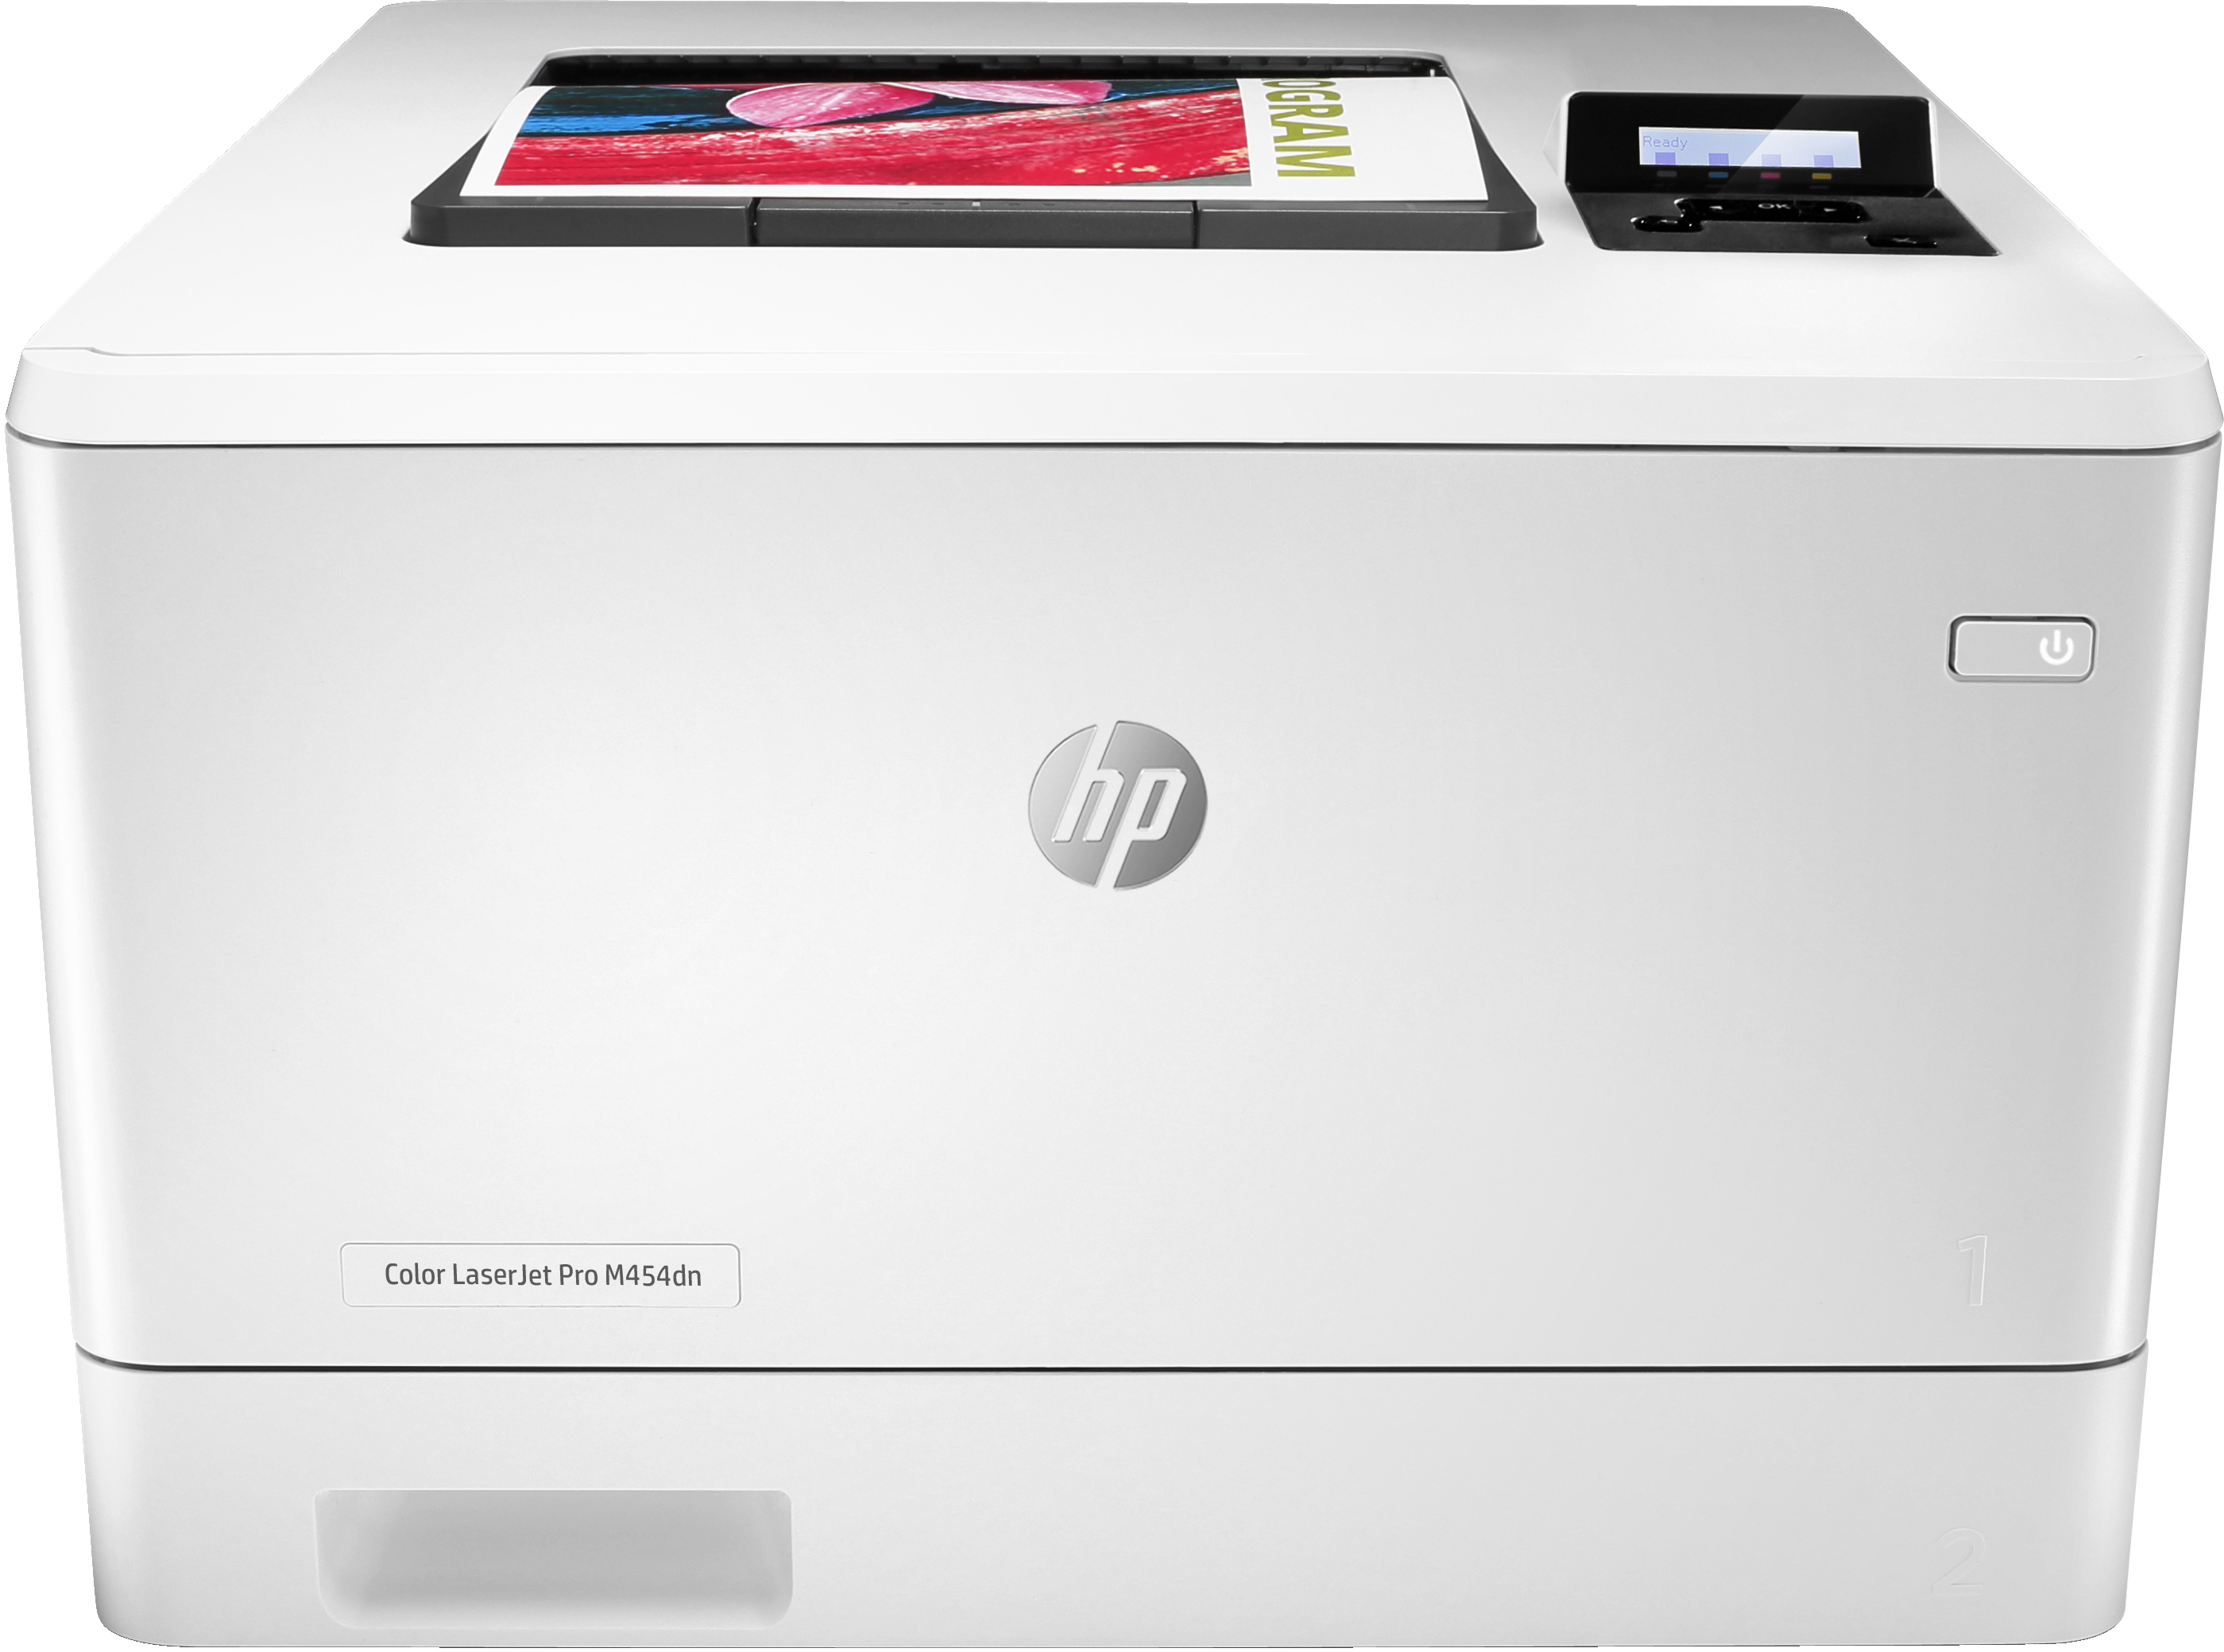 HP HP Color LaserJet Pro M454dn, Print, Dubbelzijdig afdrukken